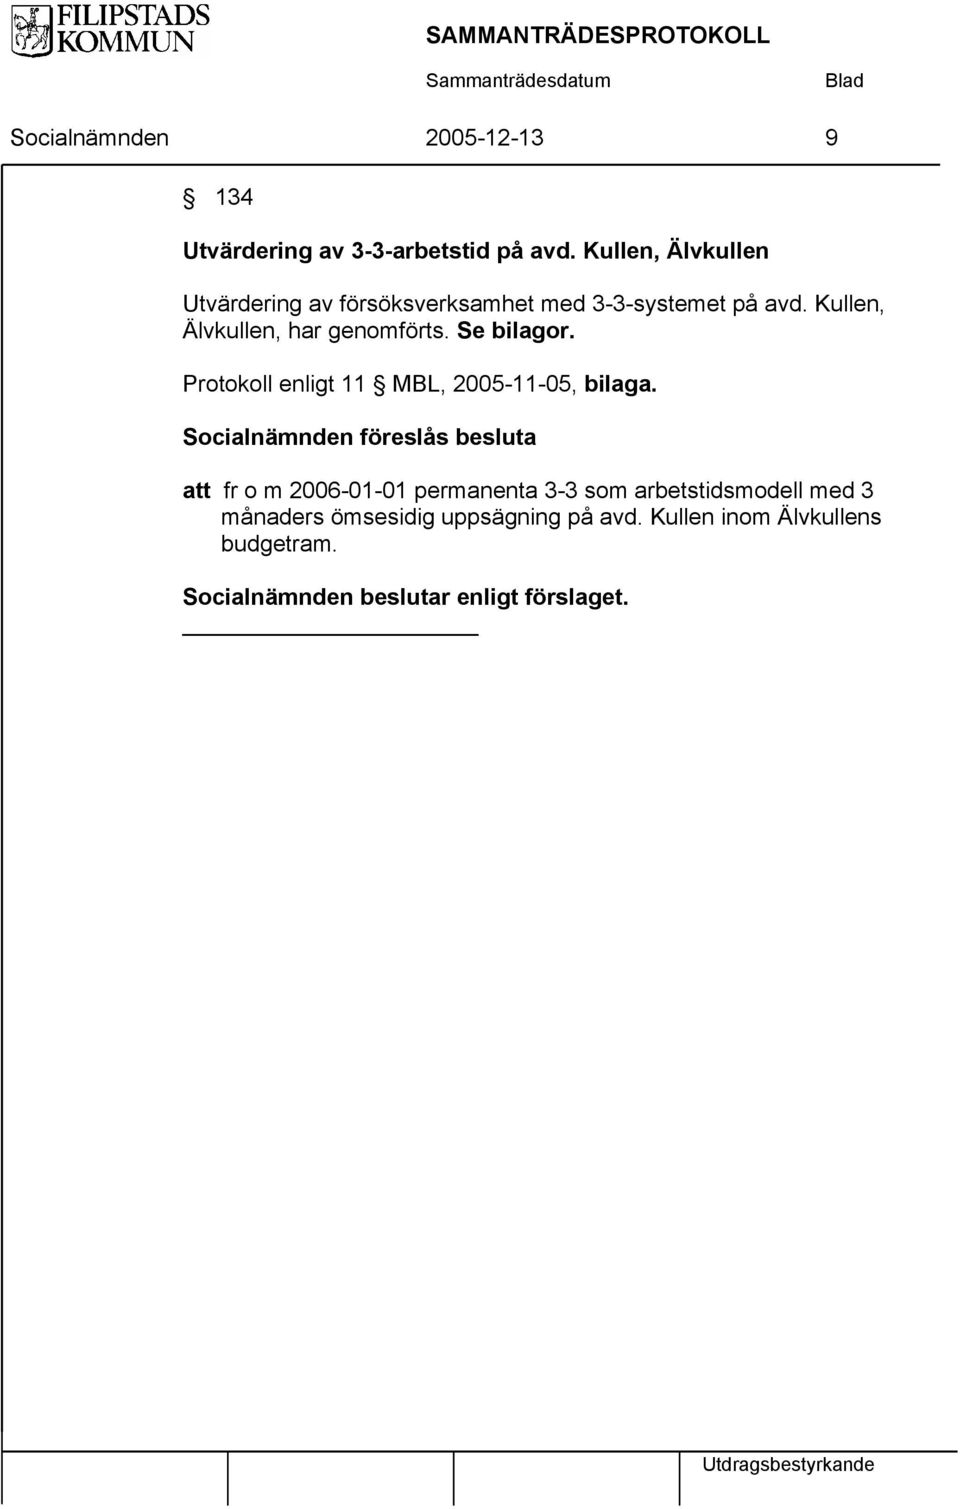 Kullen, Älvkullen, har genomförts. Se bilagor. Protokoll enligt 11 MBL, 2005-11-05, bilaga.